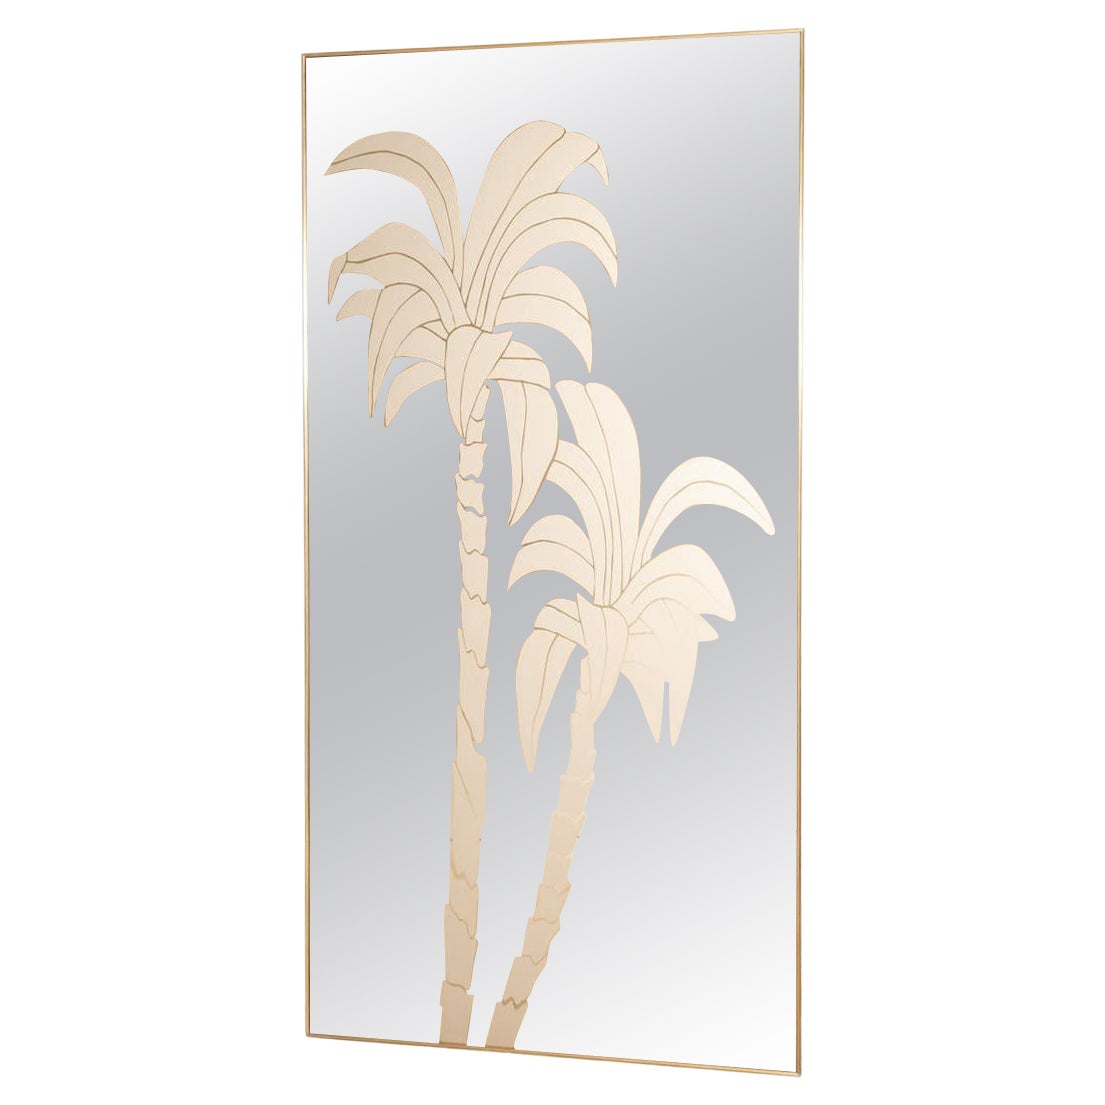 Spiegel mit Messingrahmen, Bronze-Spiegel und Palmen